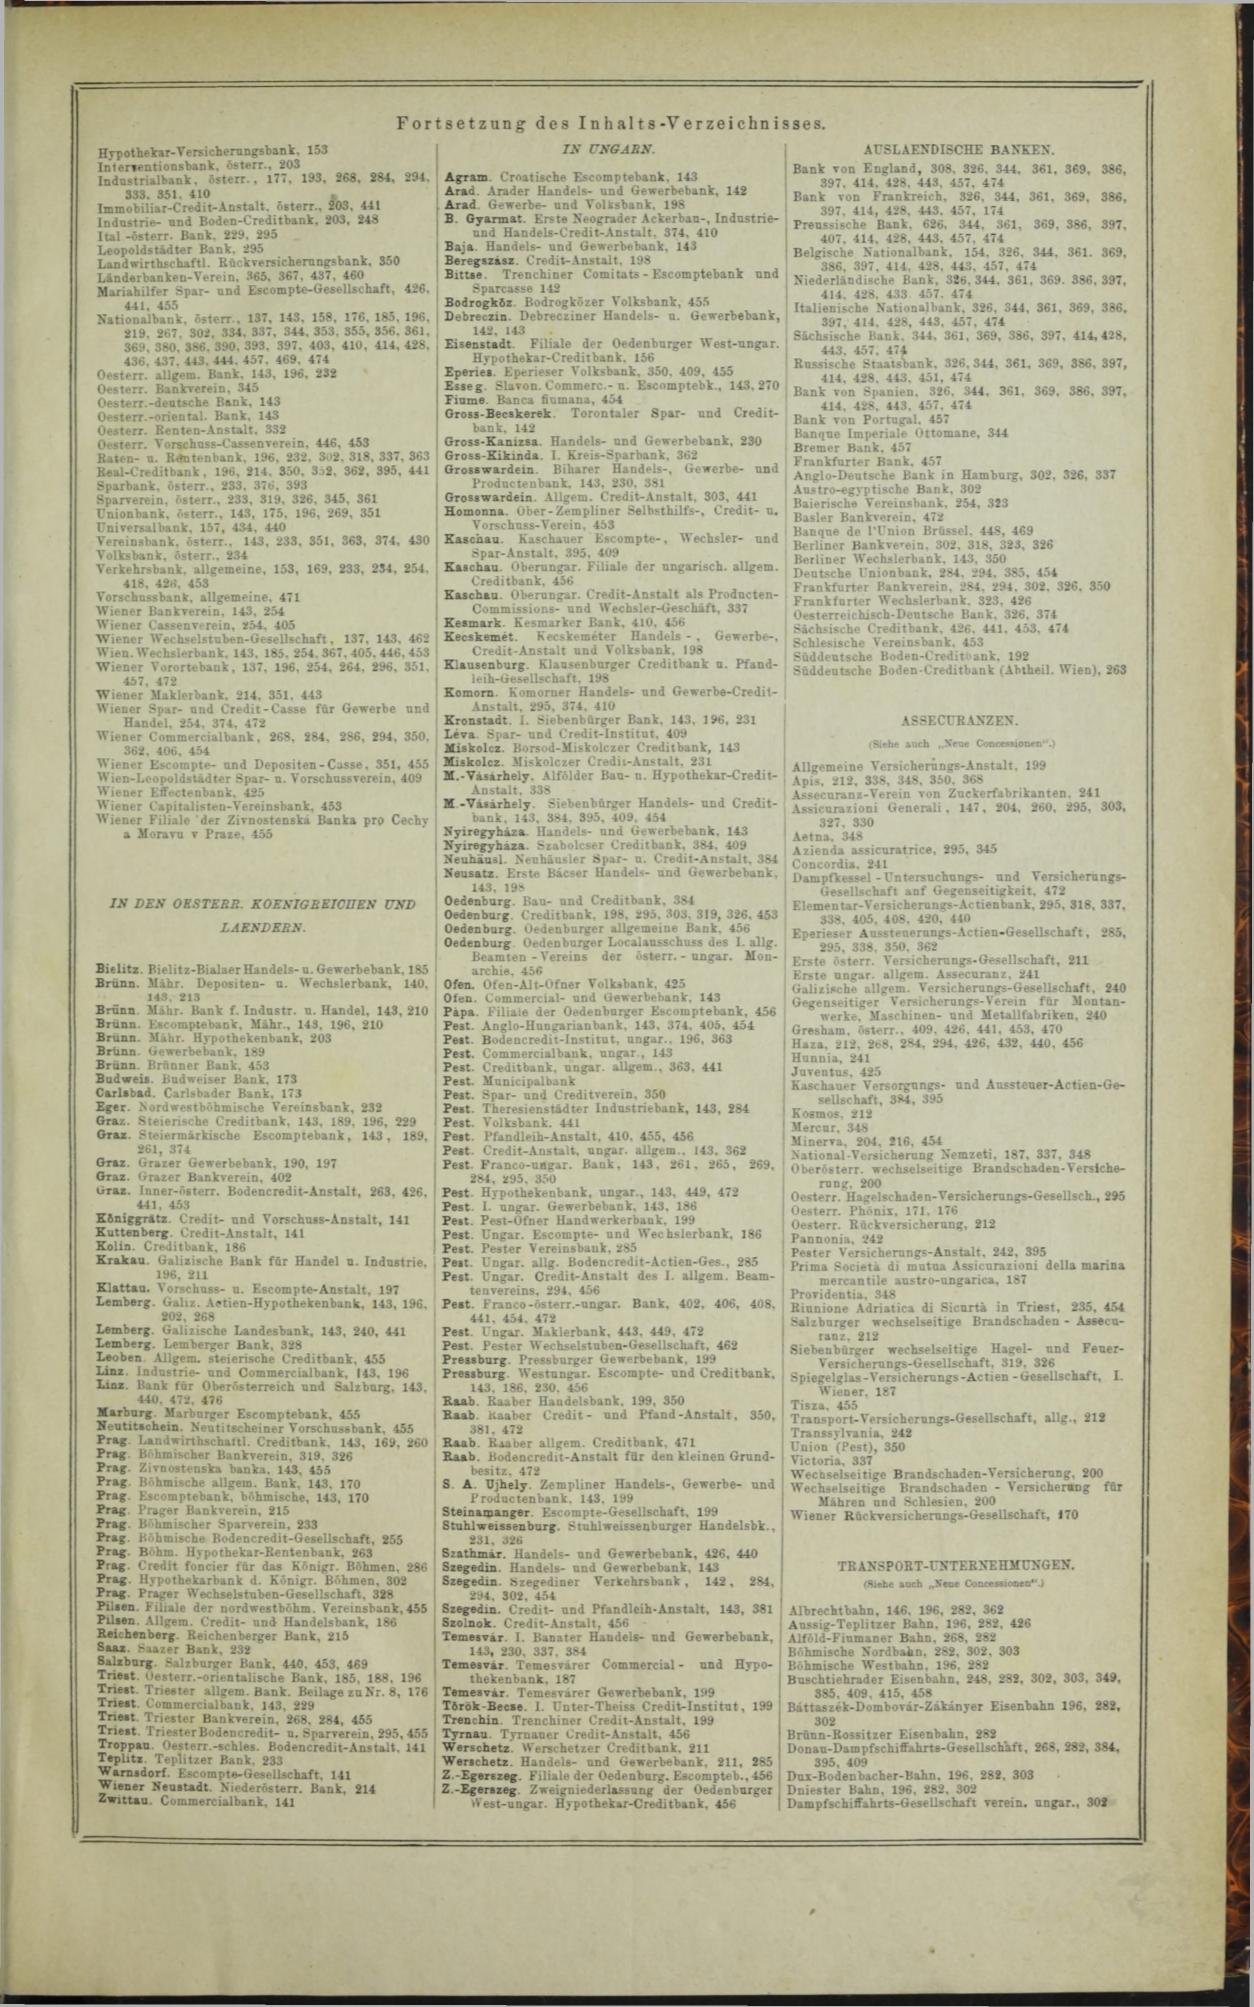 Der Tresor 19.11.1872 - Page 15